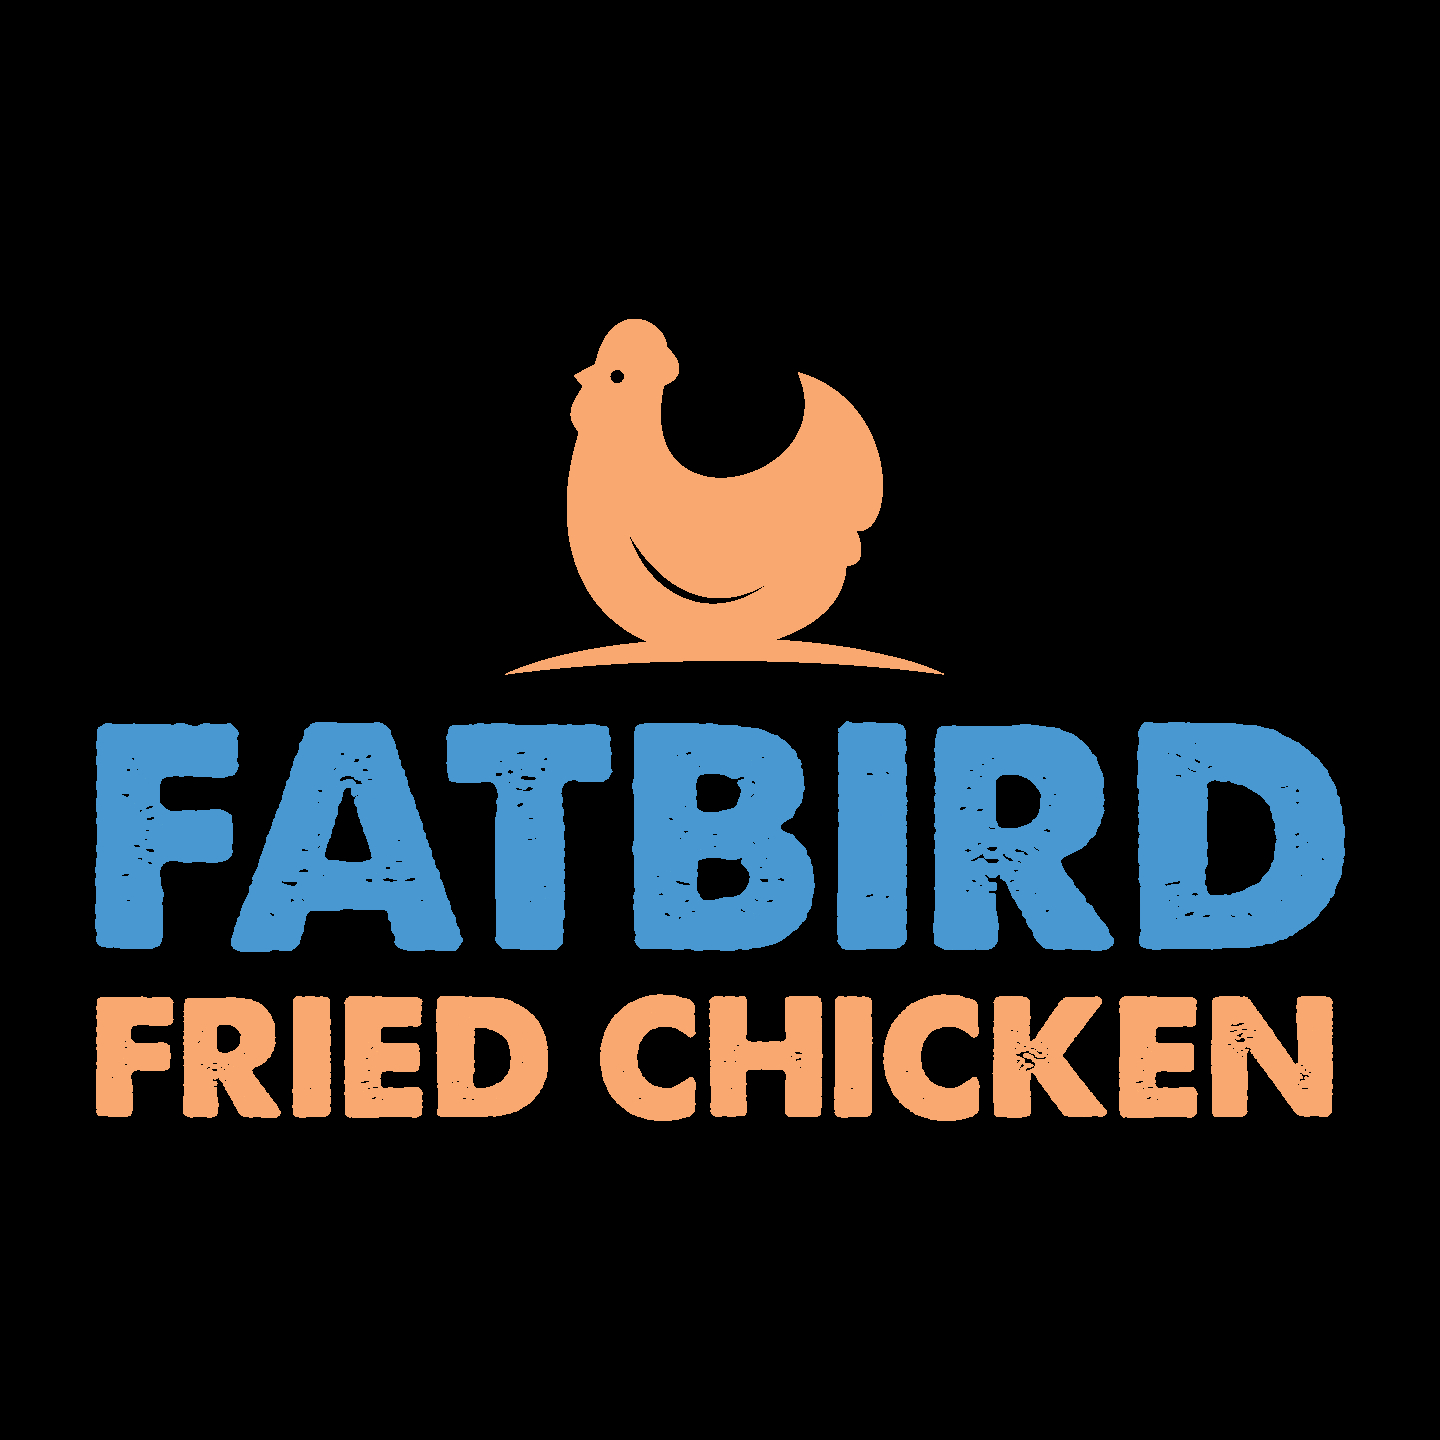 Fatbird Fried Chicken - Rôtisseries et restaurants de poulet